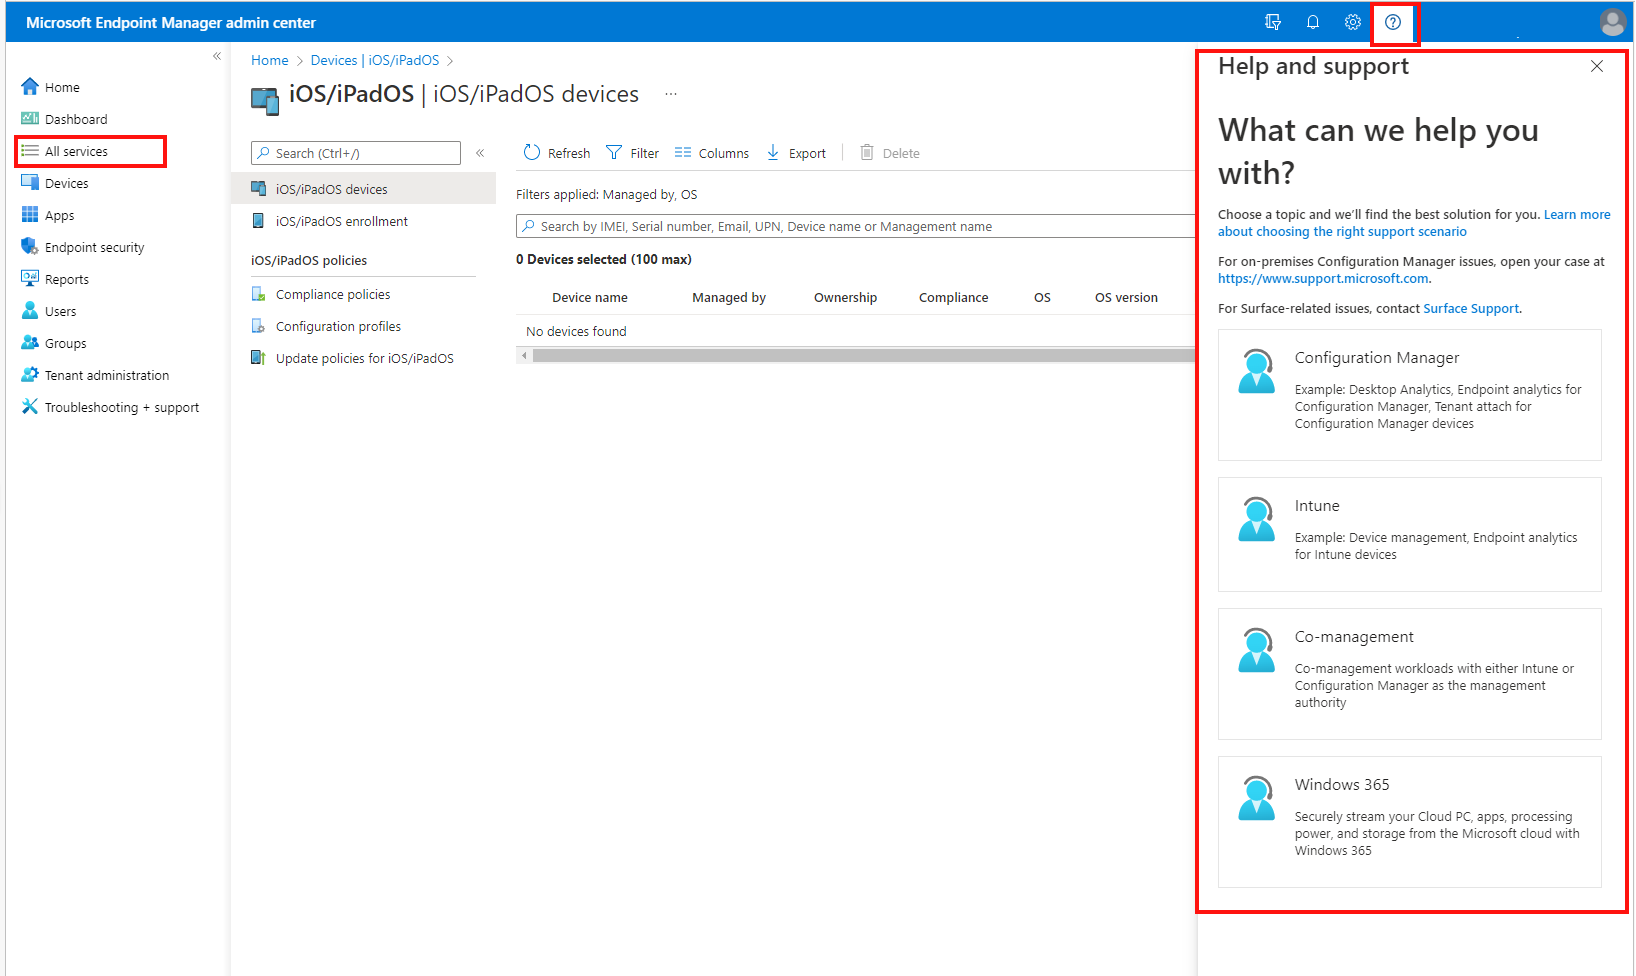 Captura de tela que mostra como obter ajuda e suporte usando a casa, o painel ou qualquer outra opção no centro de administração do Microsoft Endpoint Manager e Microsoft Intune.